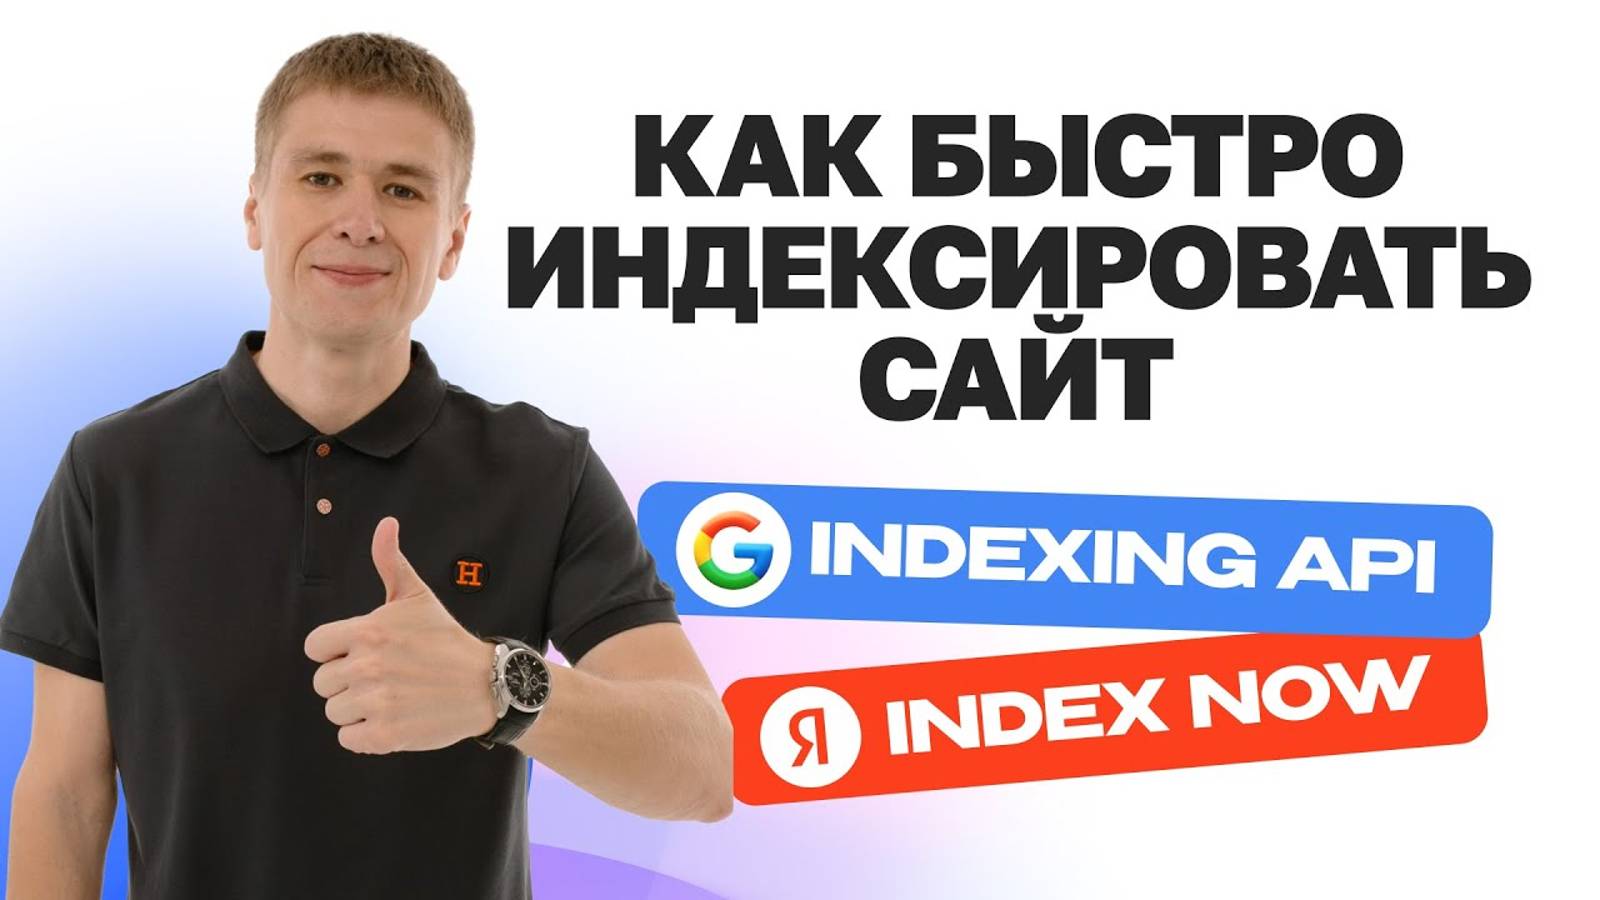 Как быстро индексировать сайт в Google Indexing API и Яндекс IndexNow?